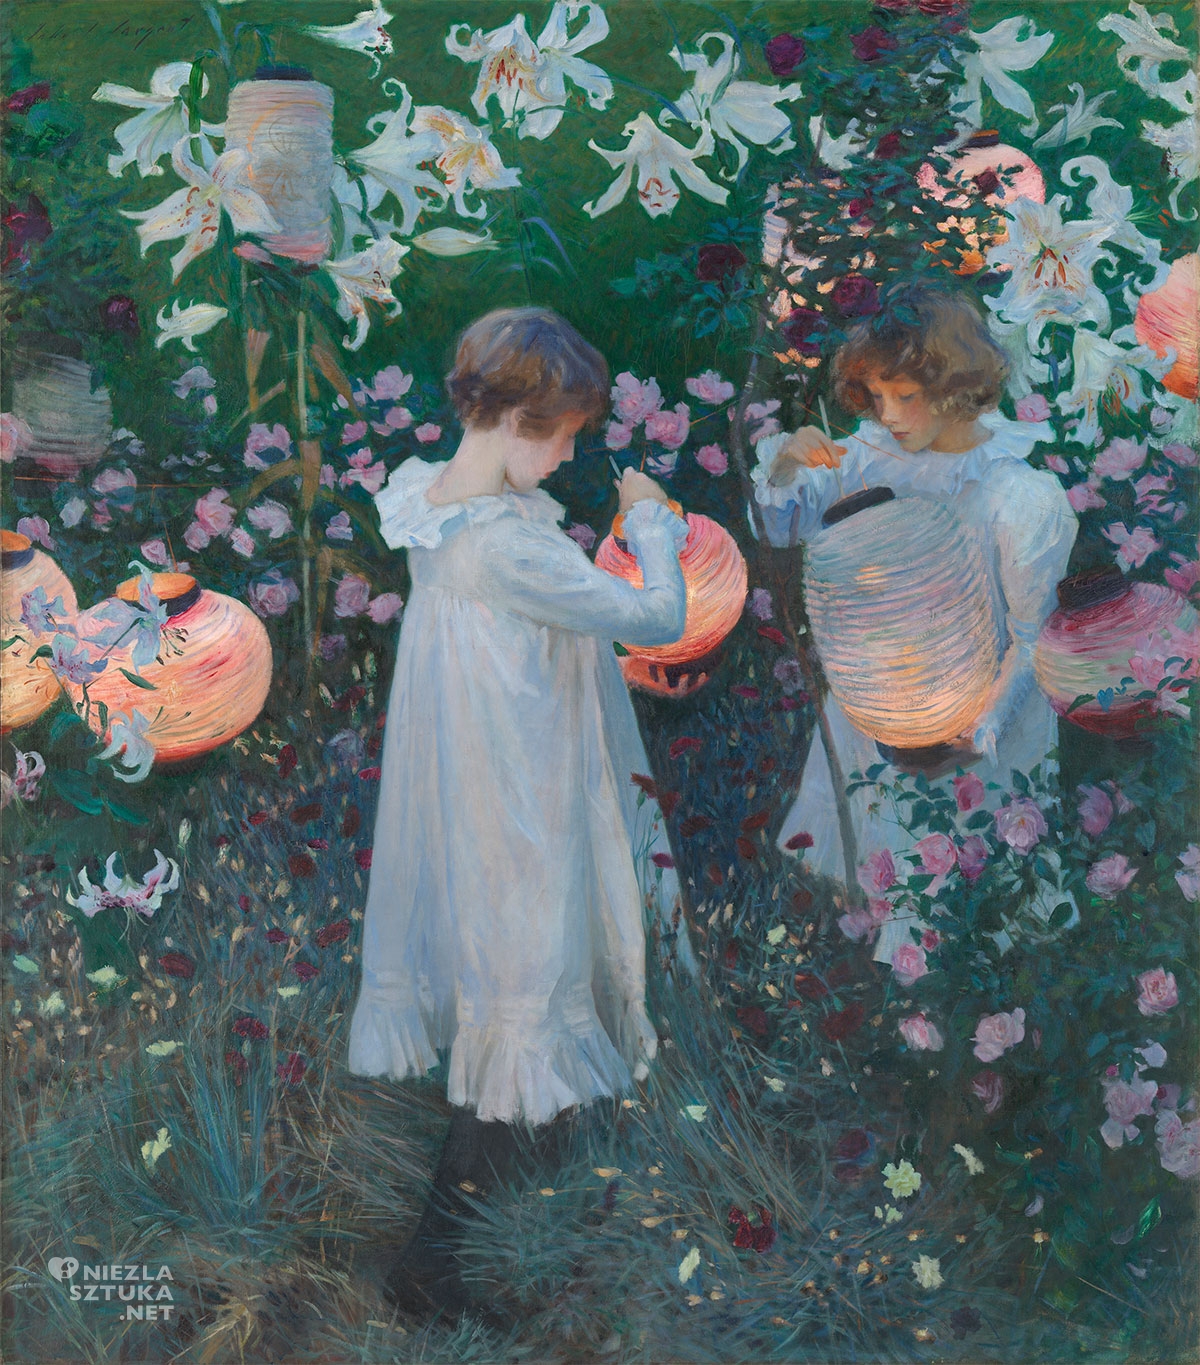 John Singer Sargent, Goździk, lilia, lilia, róża, malarstwo amerykańskie, dziecko w sztuce, Niezła sztuka